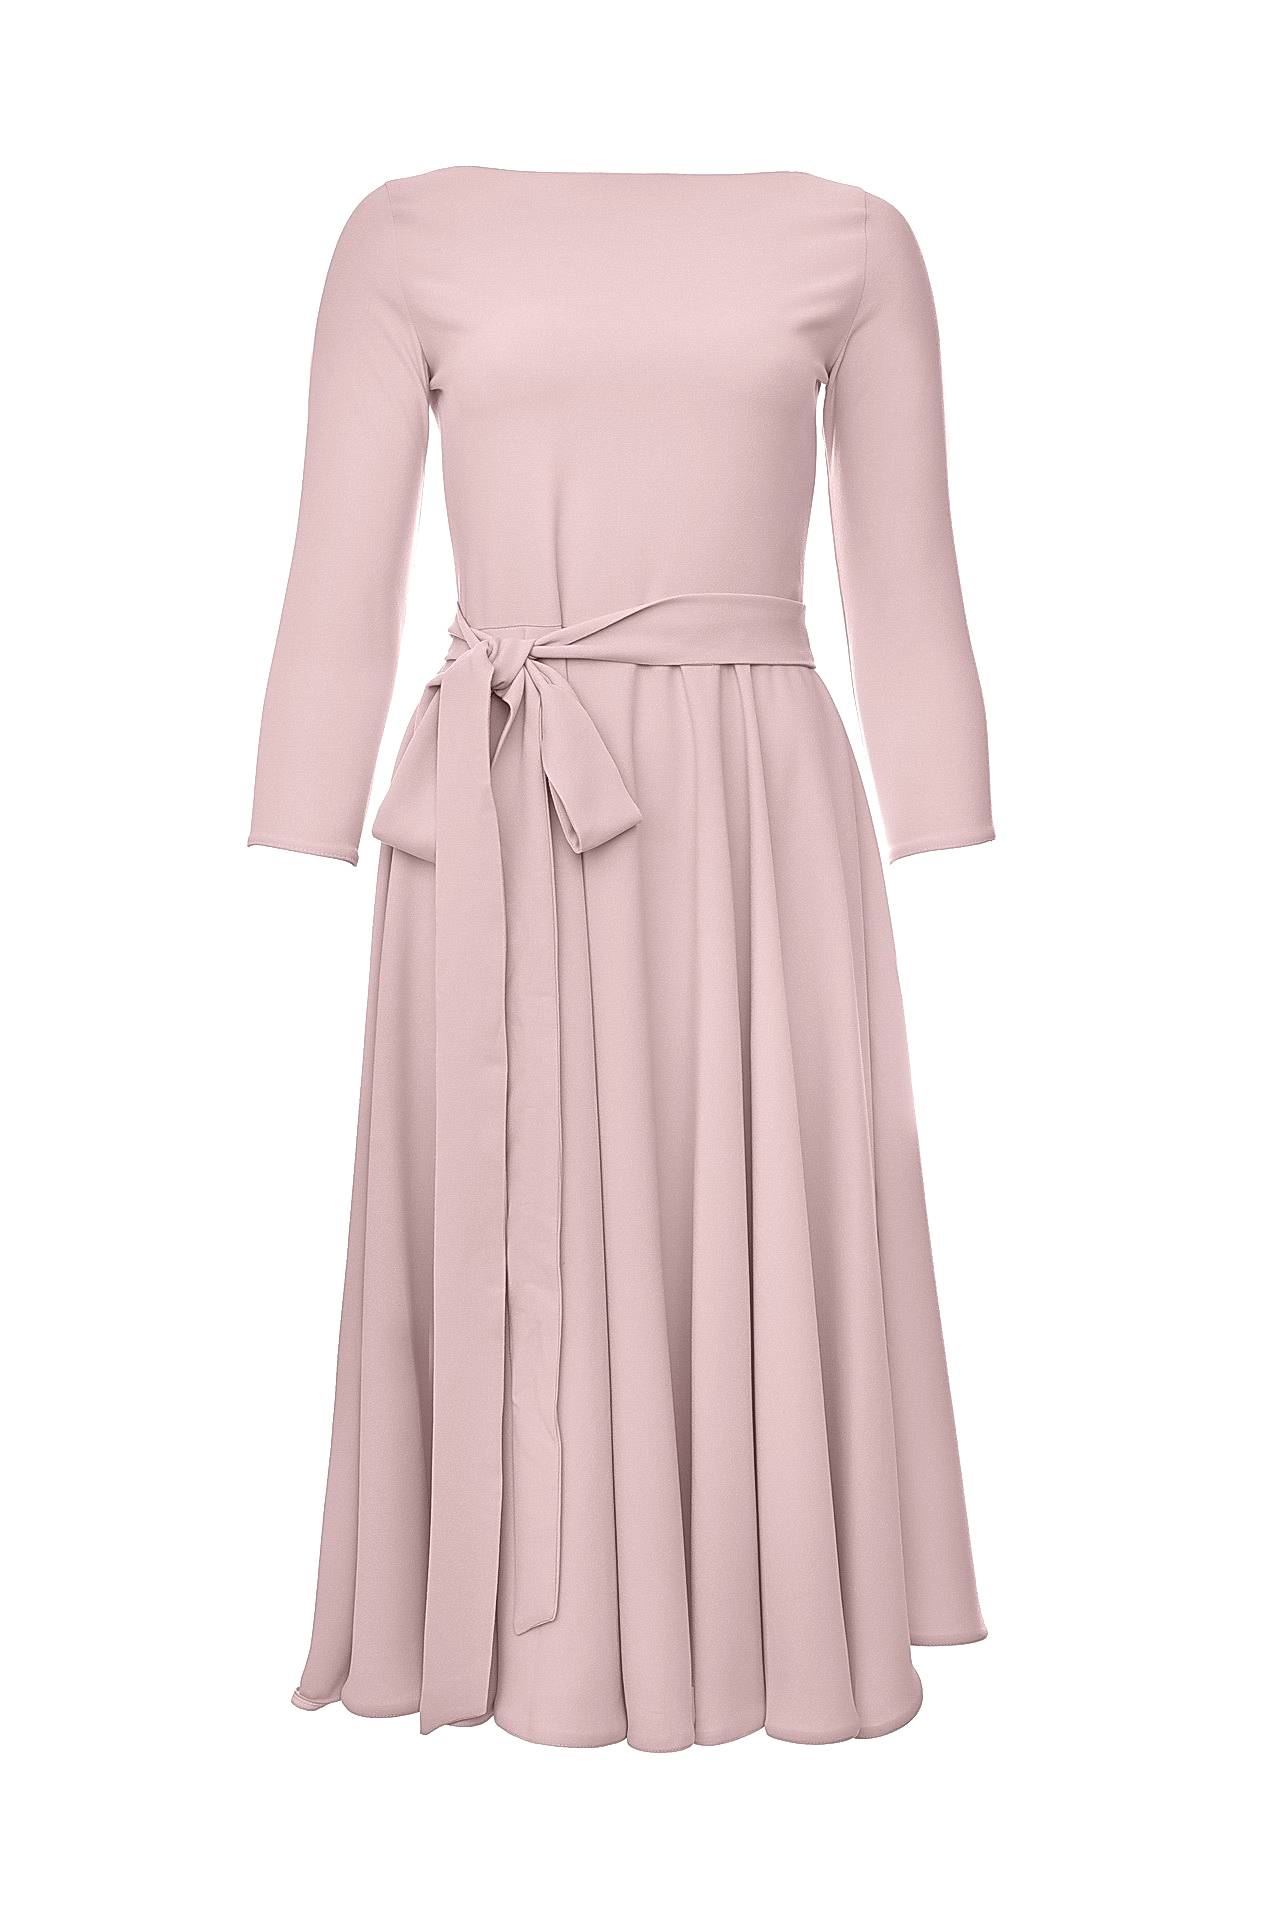 Одежда женская Платье RHEA COSTA (4083D/16.3). Купить за 22750 руб.